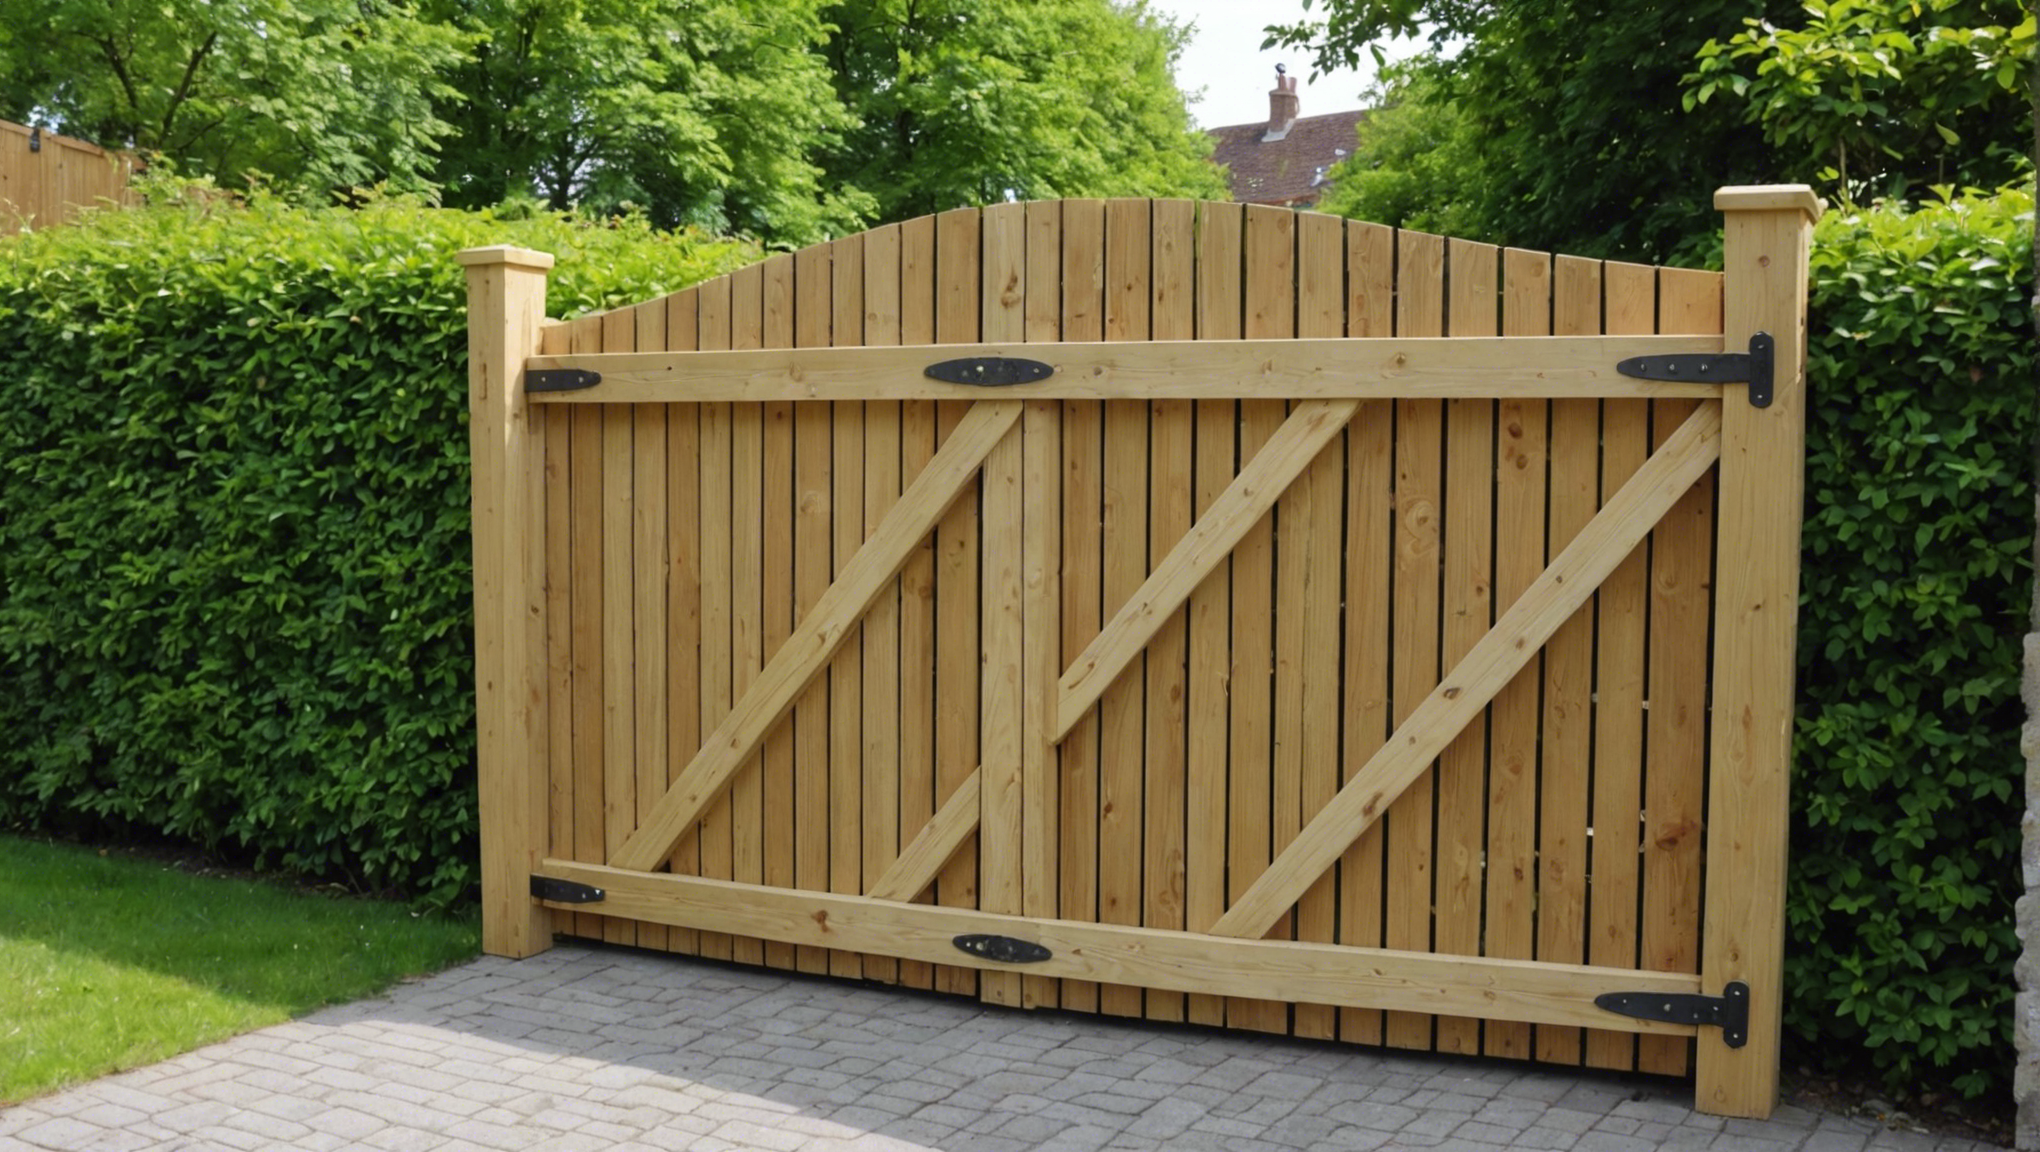 découvrez comment fabriquer un portail en bois chez vous et ajouter une touche d'artisanat à votre domicile avec nos conseils détaillés et astuces pratiques.